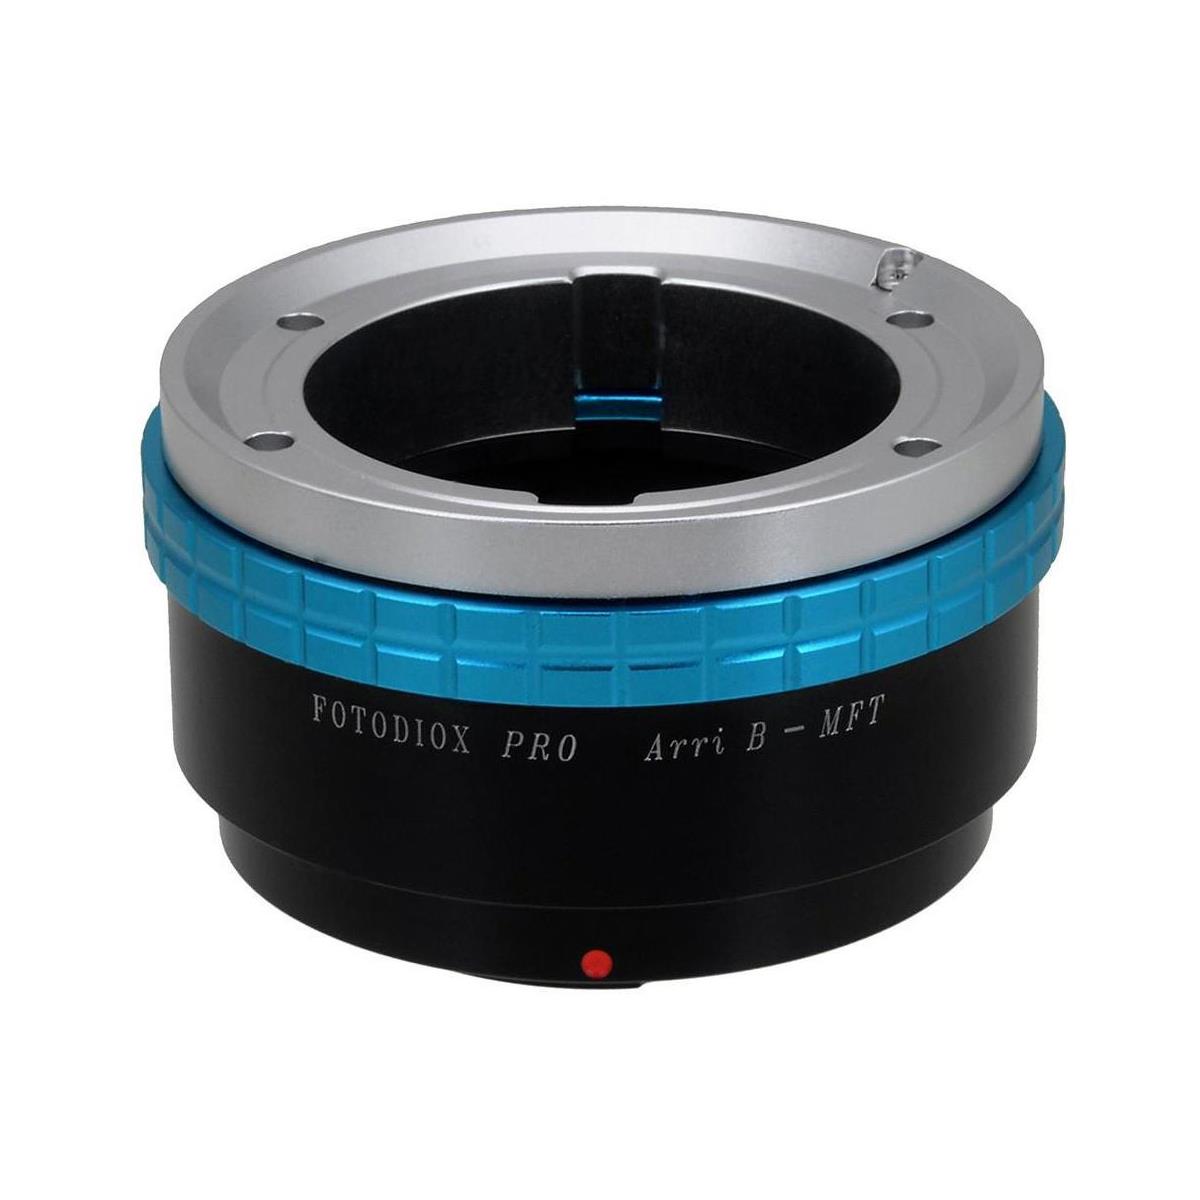 Image of Fotodiox Pro Lens Mount Adapter for Arri-B SLR Lens to MFT Mount Camera